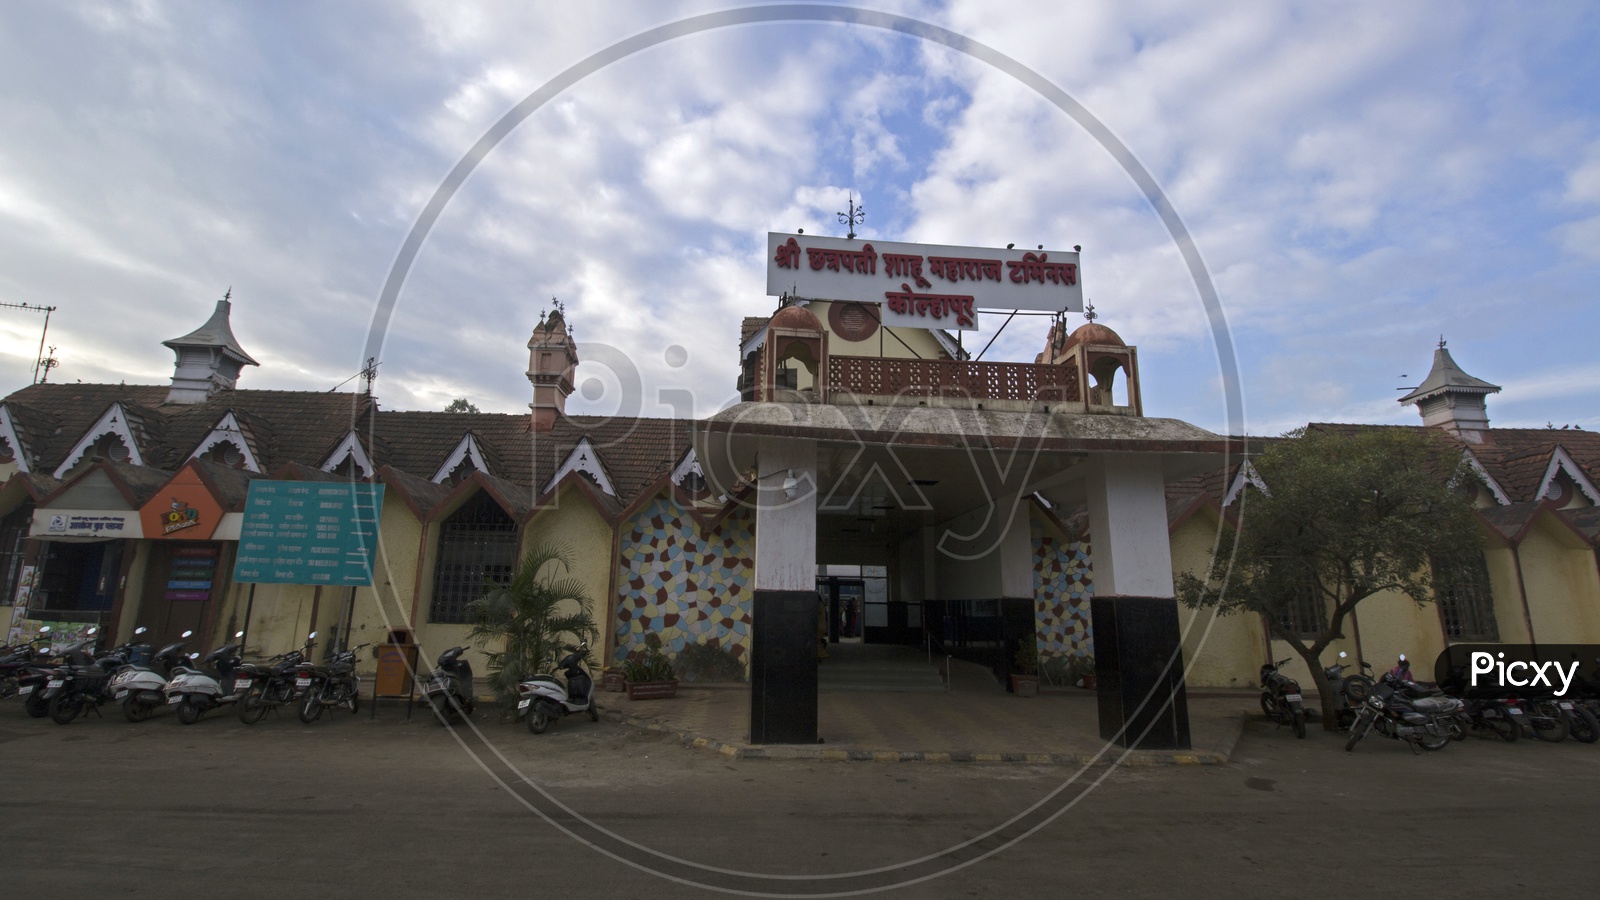 Chhatrapati Shahu Maharaj Terminus Railway station